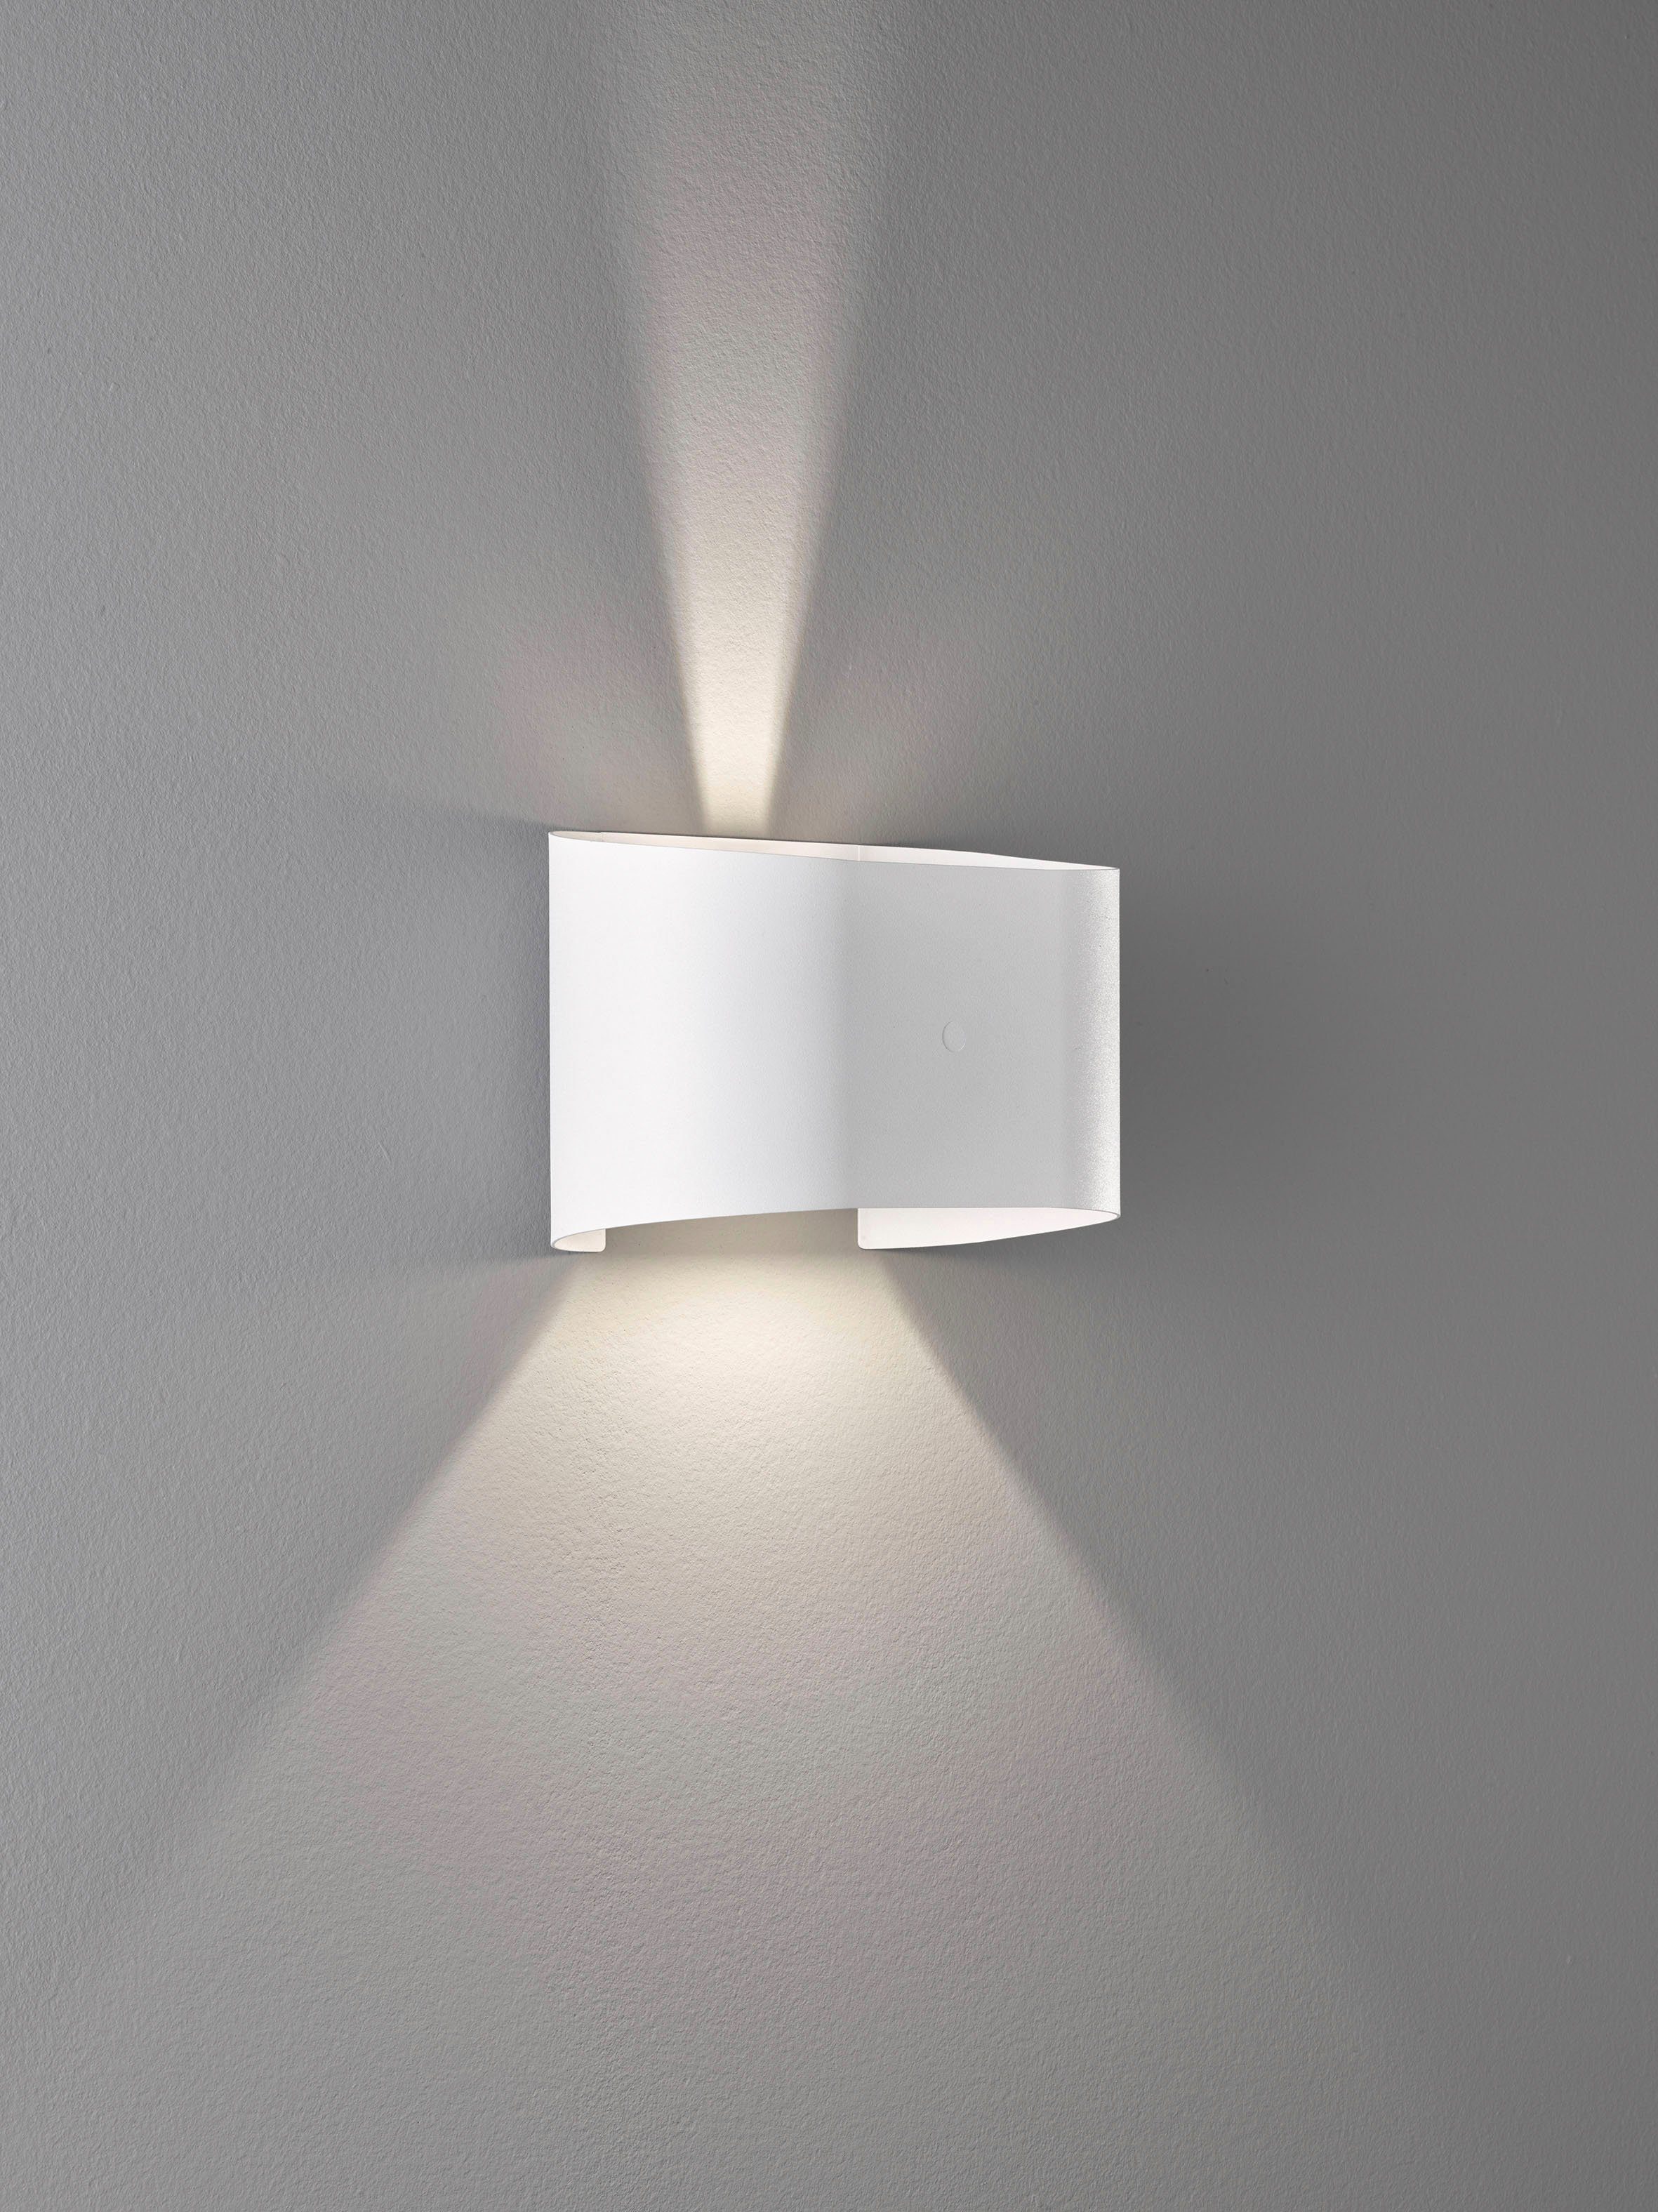 & integriert, LED FISCHER HONSEL LED Wall, fest Warmweiß Wandleuchte Ein-/Ausschalter,